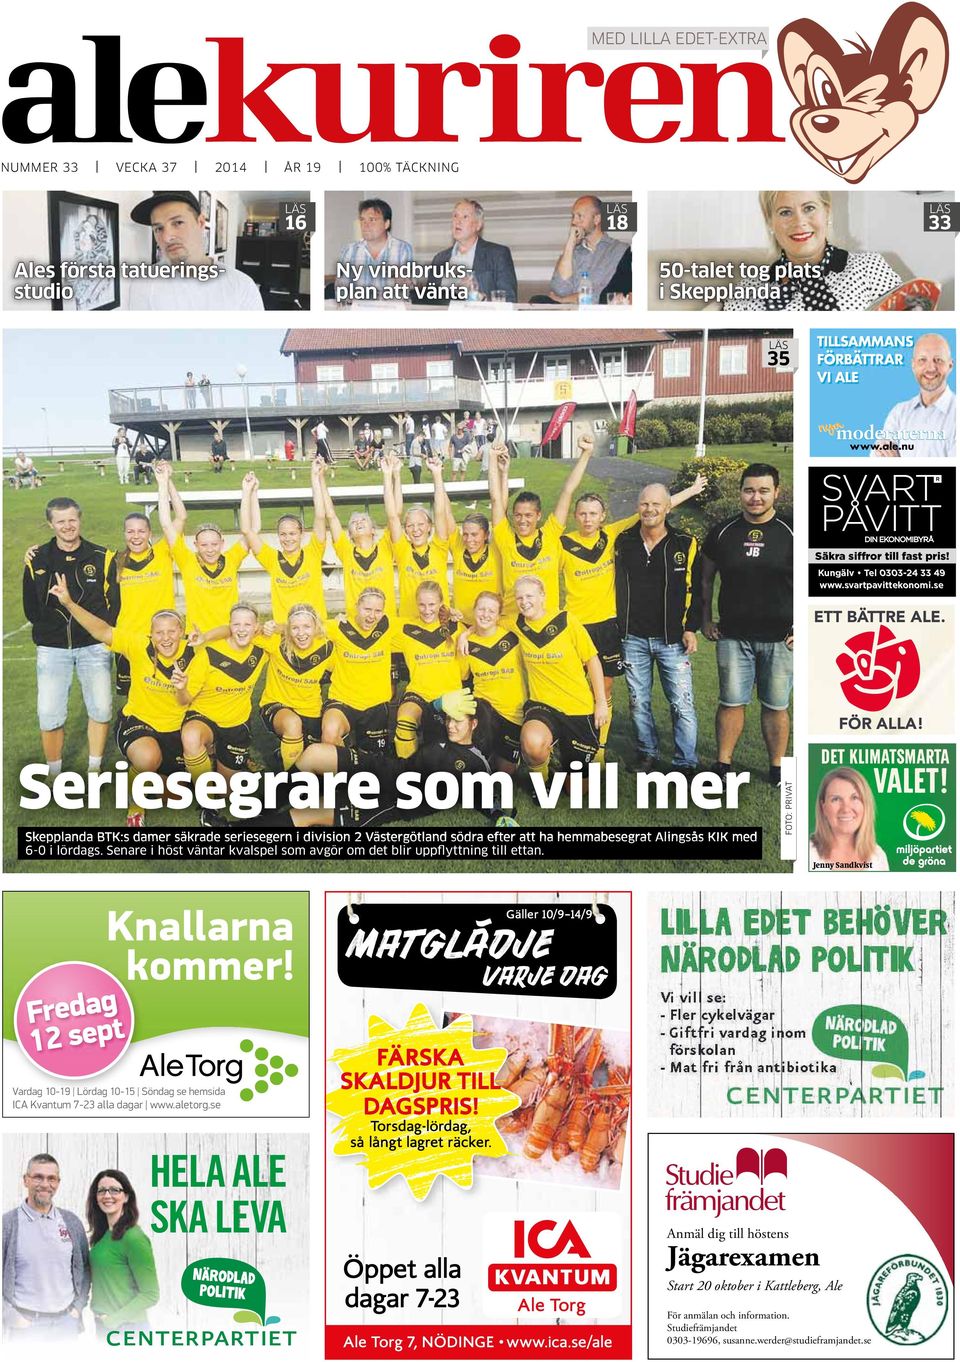 Seriesegrare som vill mer Skepplanda BTK:s damer säkrade seriesegern i division 2 Västergötland södra efter att ha hemmabesegrat Alingsås KIK med 6-0 i lördags.